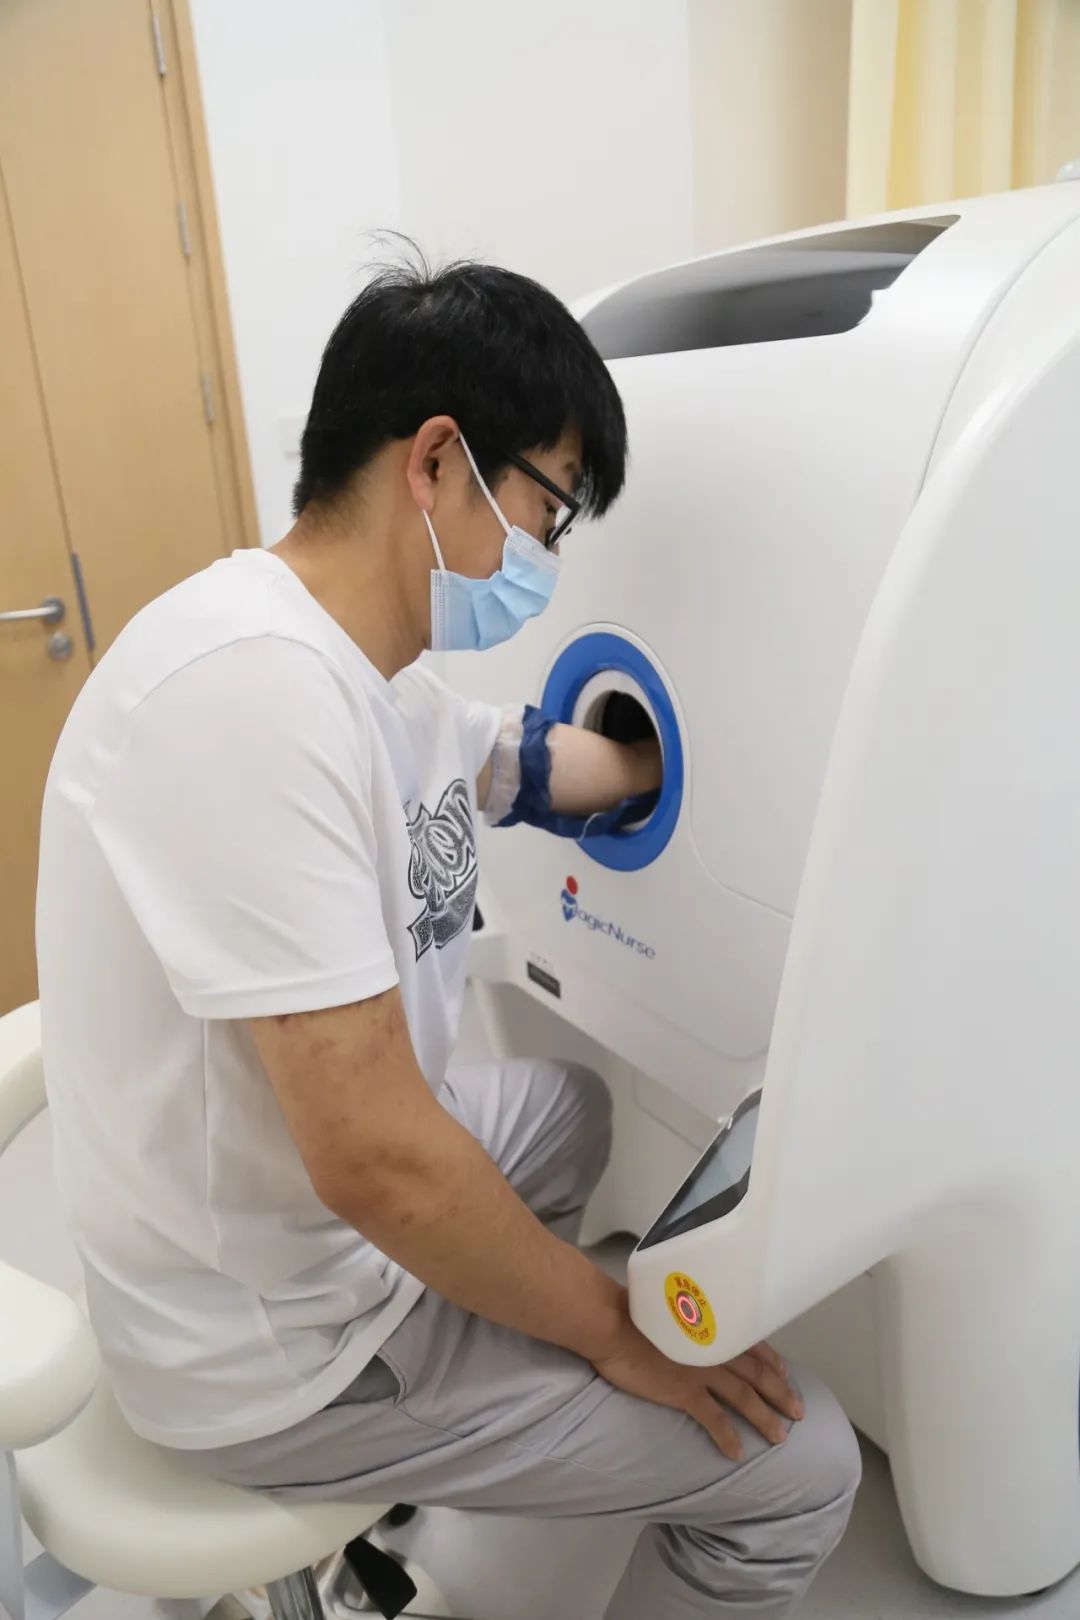 浙江省首台全自动采血机器人在浙江大学医学院附属第四医院投用